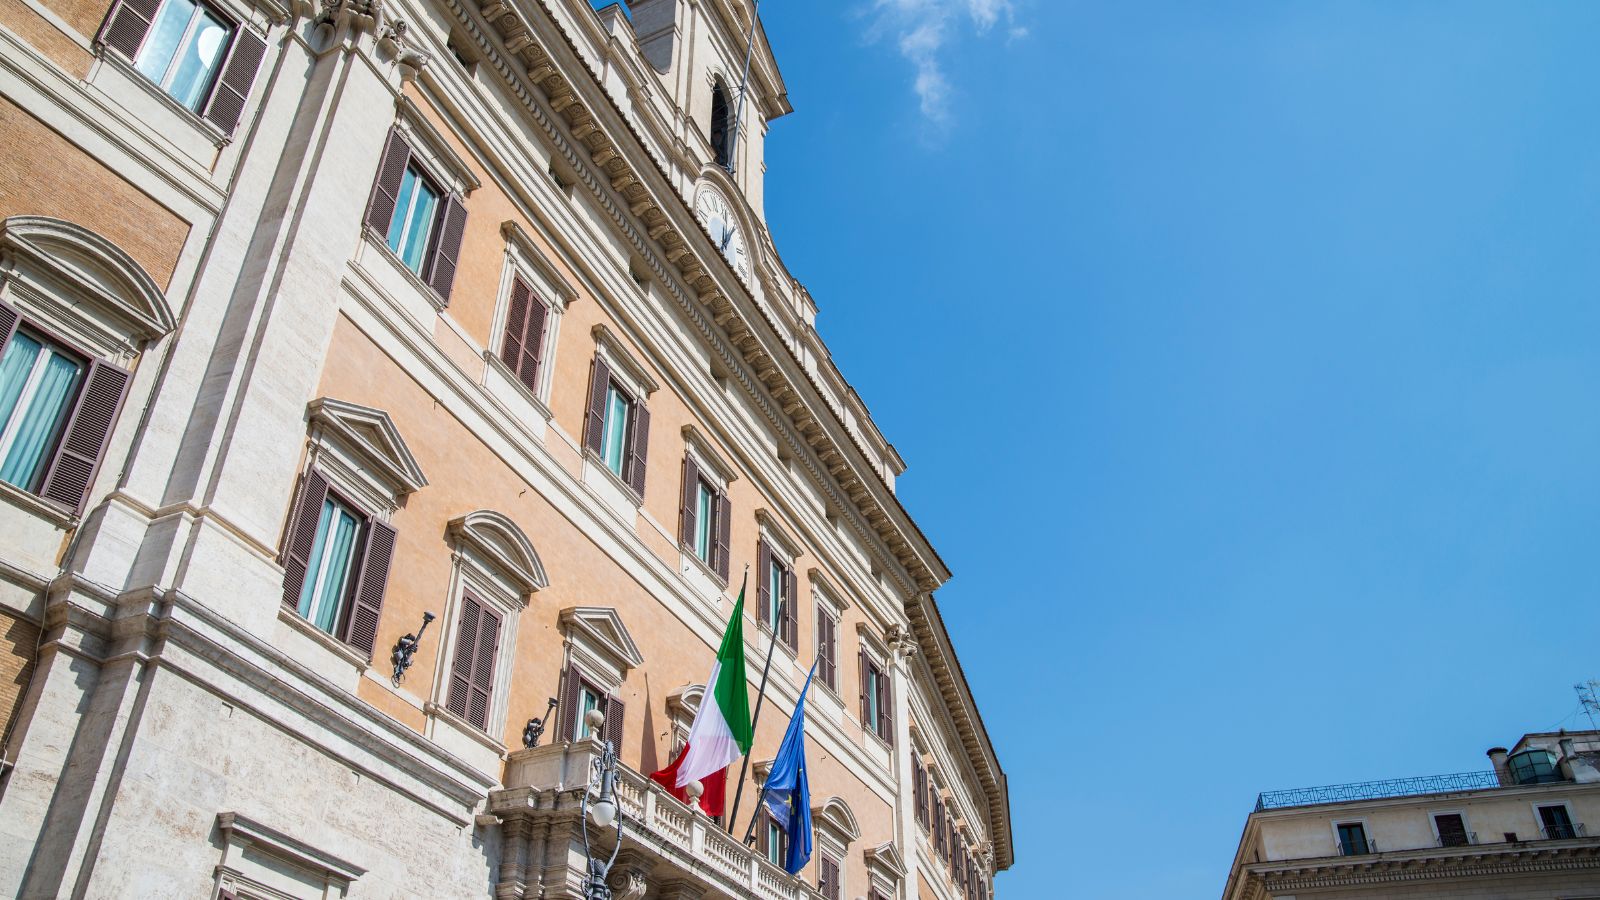 Parlamento italiano, il più vecchio dal 1968